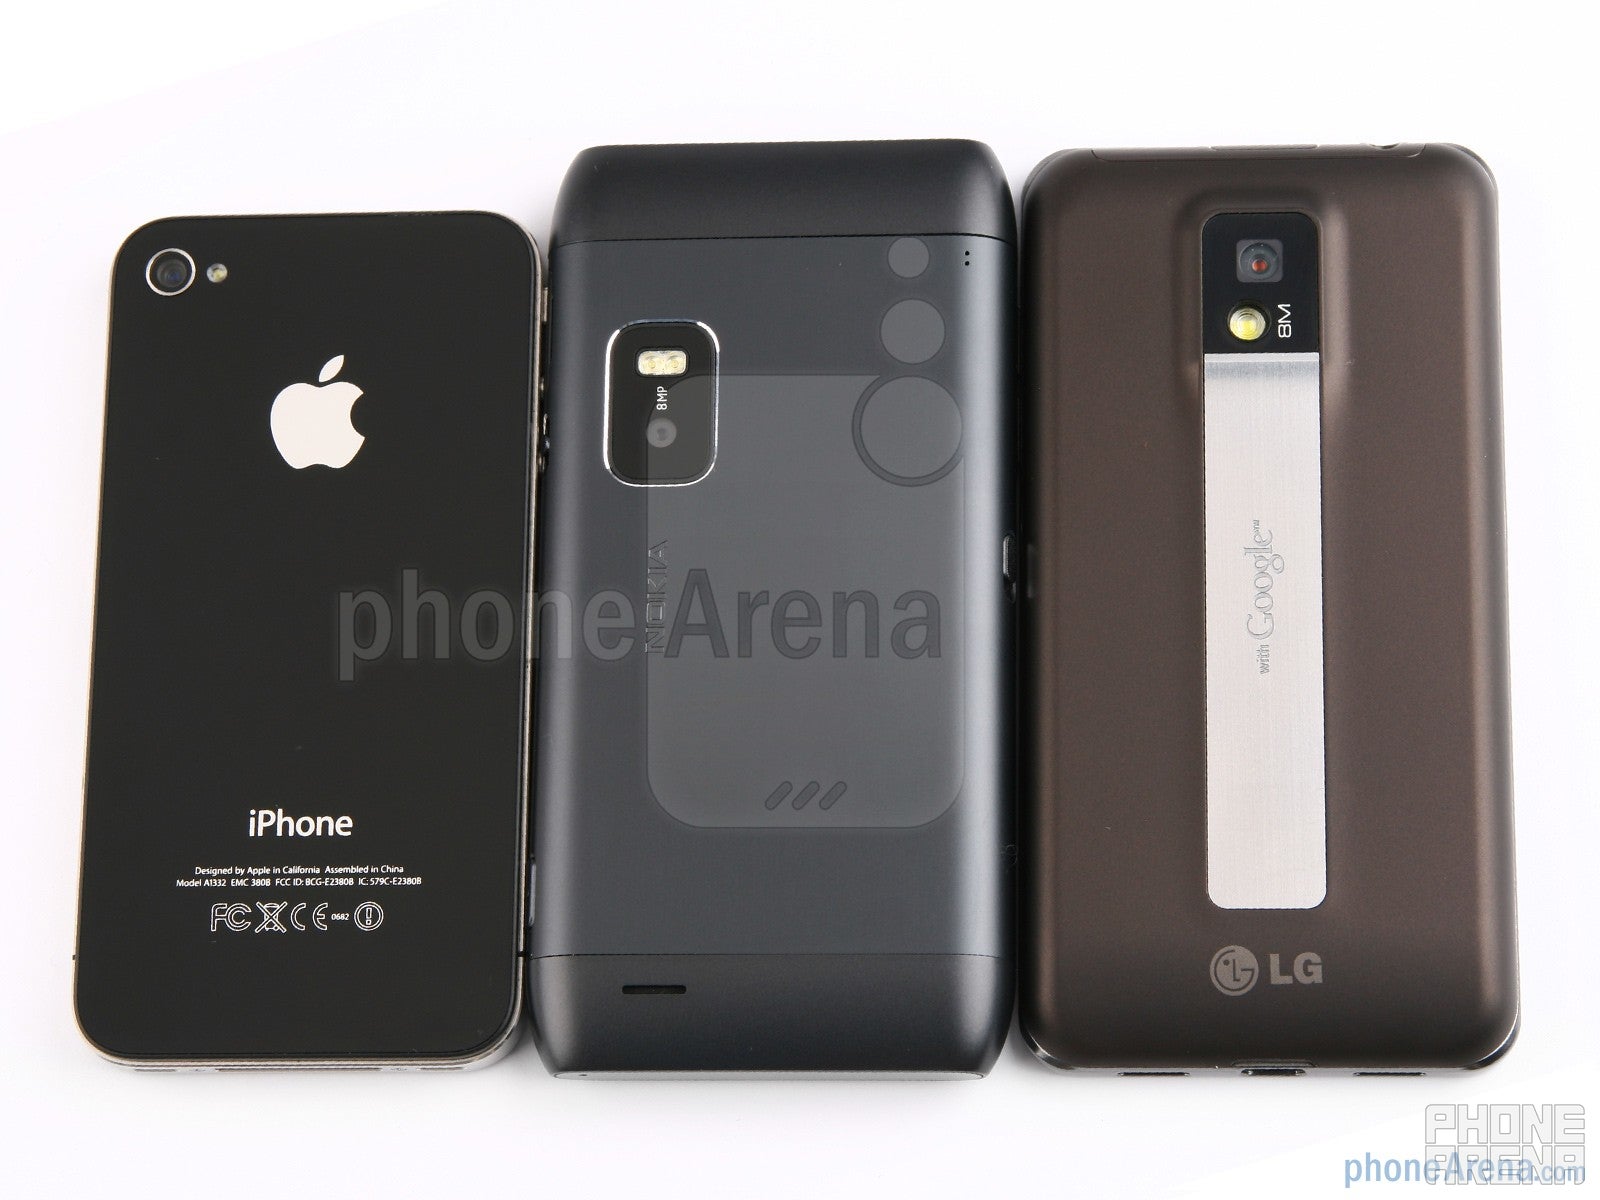 Backs - Nokia E7 vs LG Optimus 2X vs Apple iPhone 4